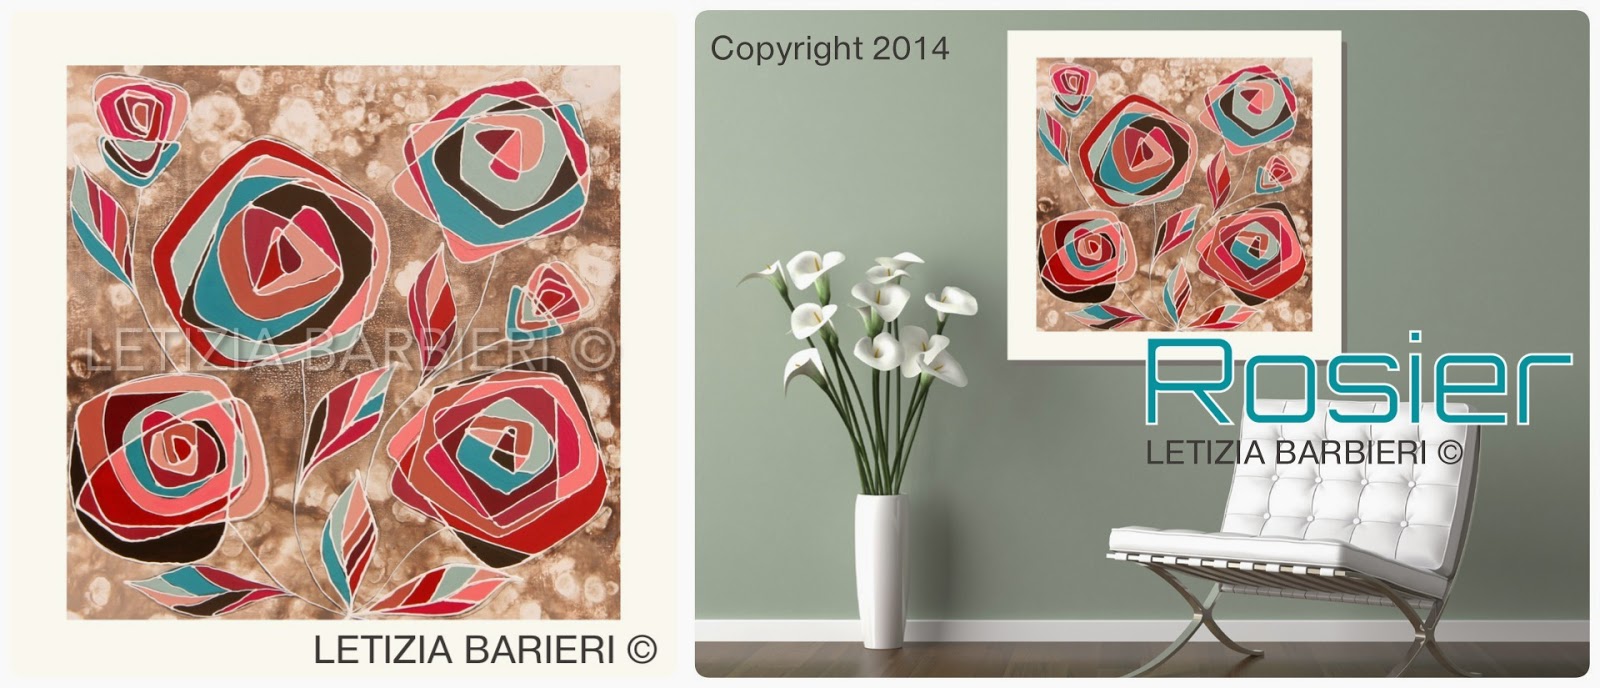 immagini stilizzate di fiori - Stilizzato Fiore foto ed immagini Fotosearch